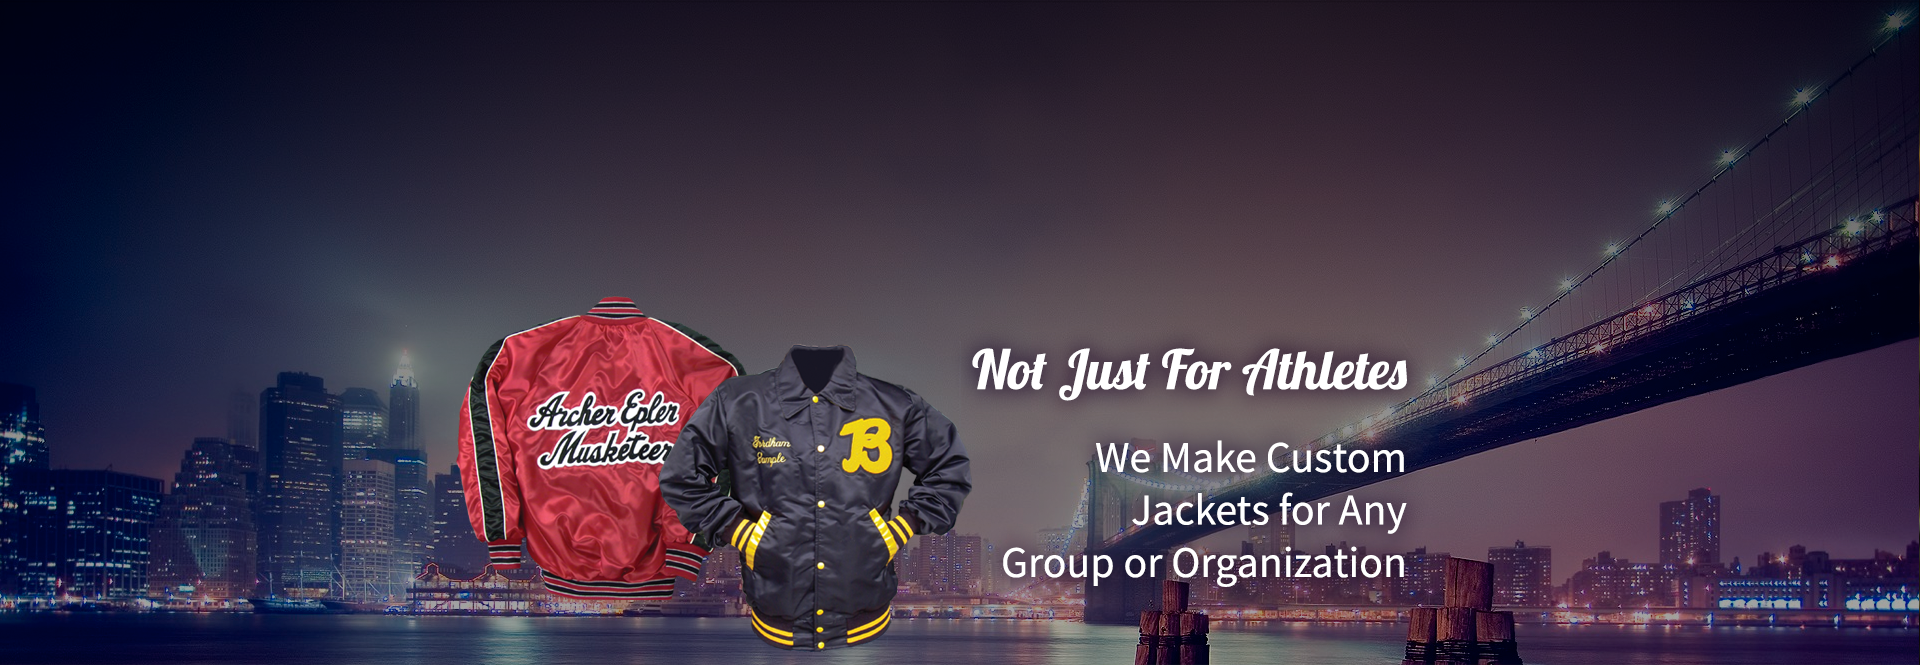 Personalized/Customized Varsity Jackets